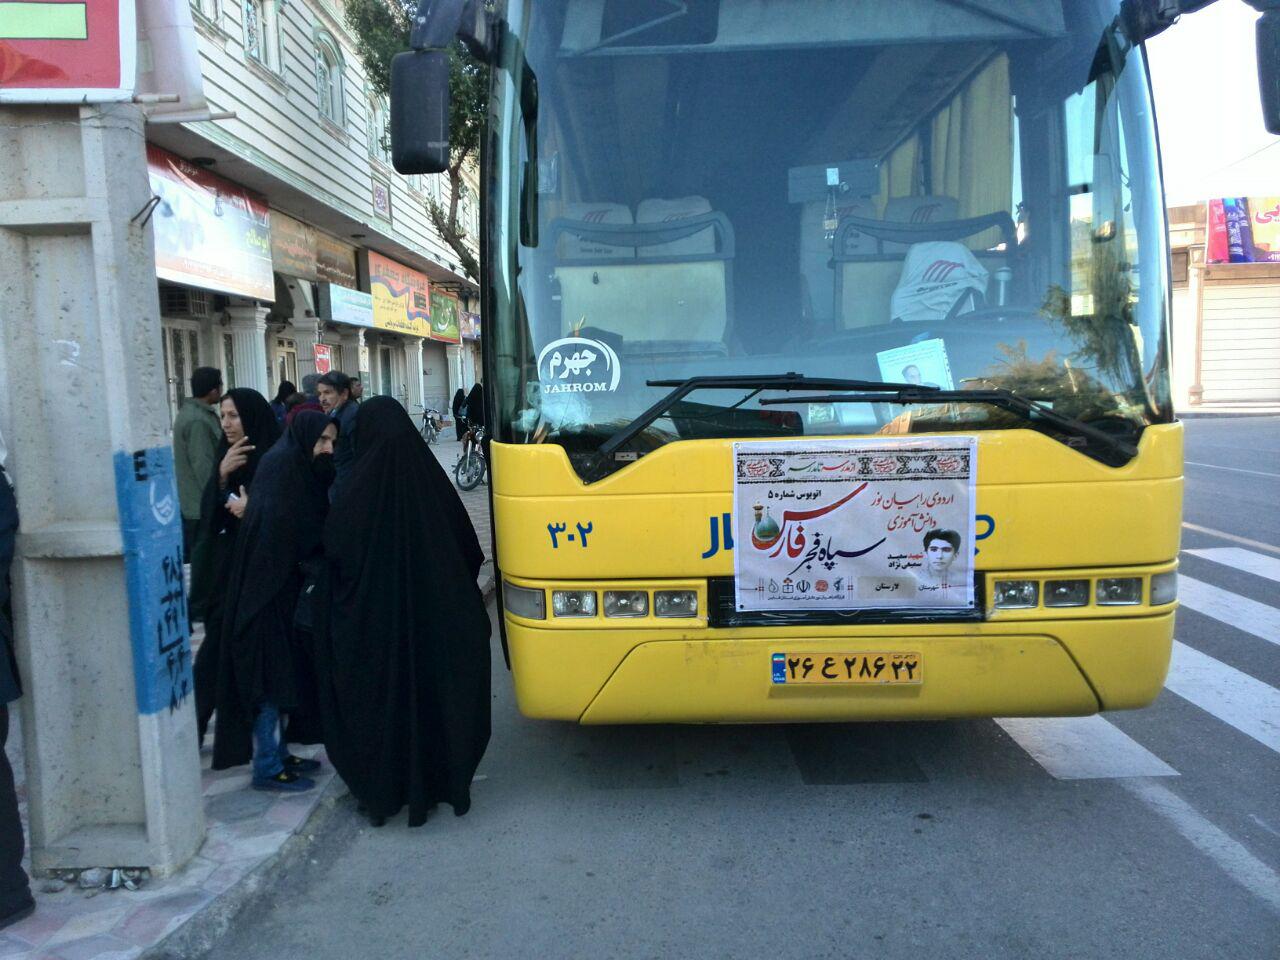 اعزام 450 نفر از دانش آموزان خواهر لارستانی به مناطق عملیاتی دوران دفاع مقدس